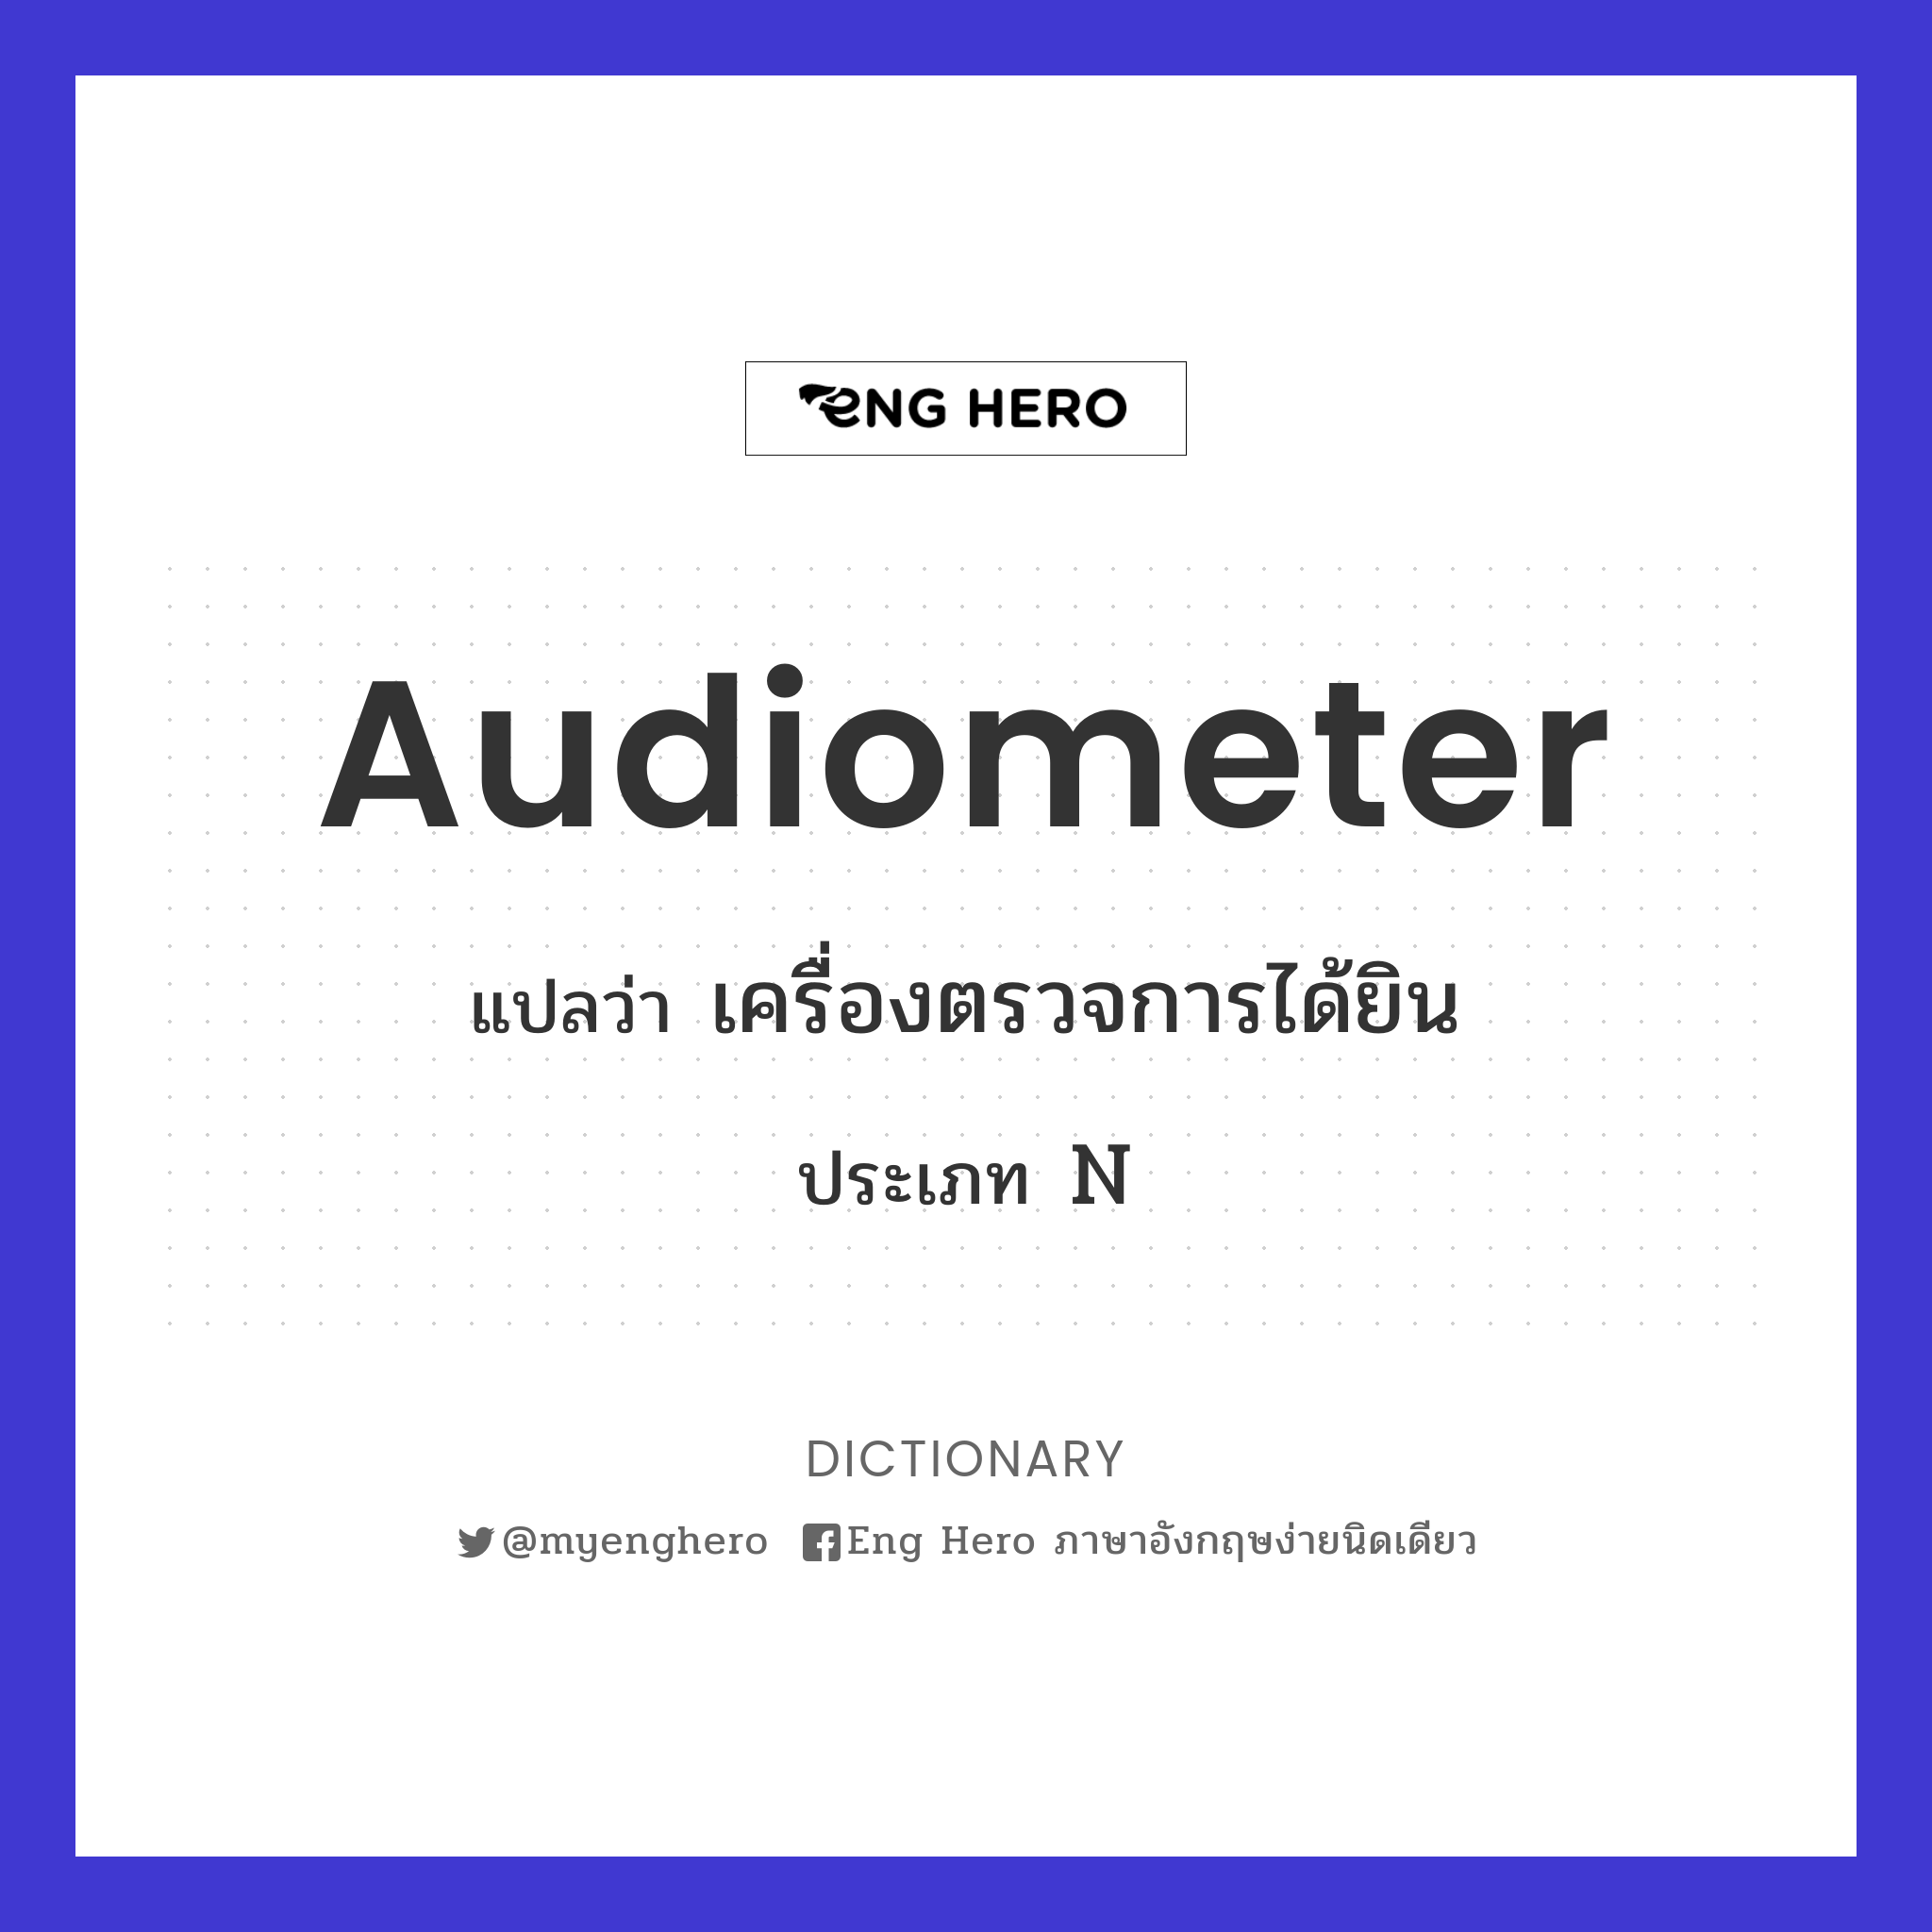 audiometer